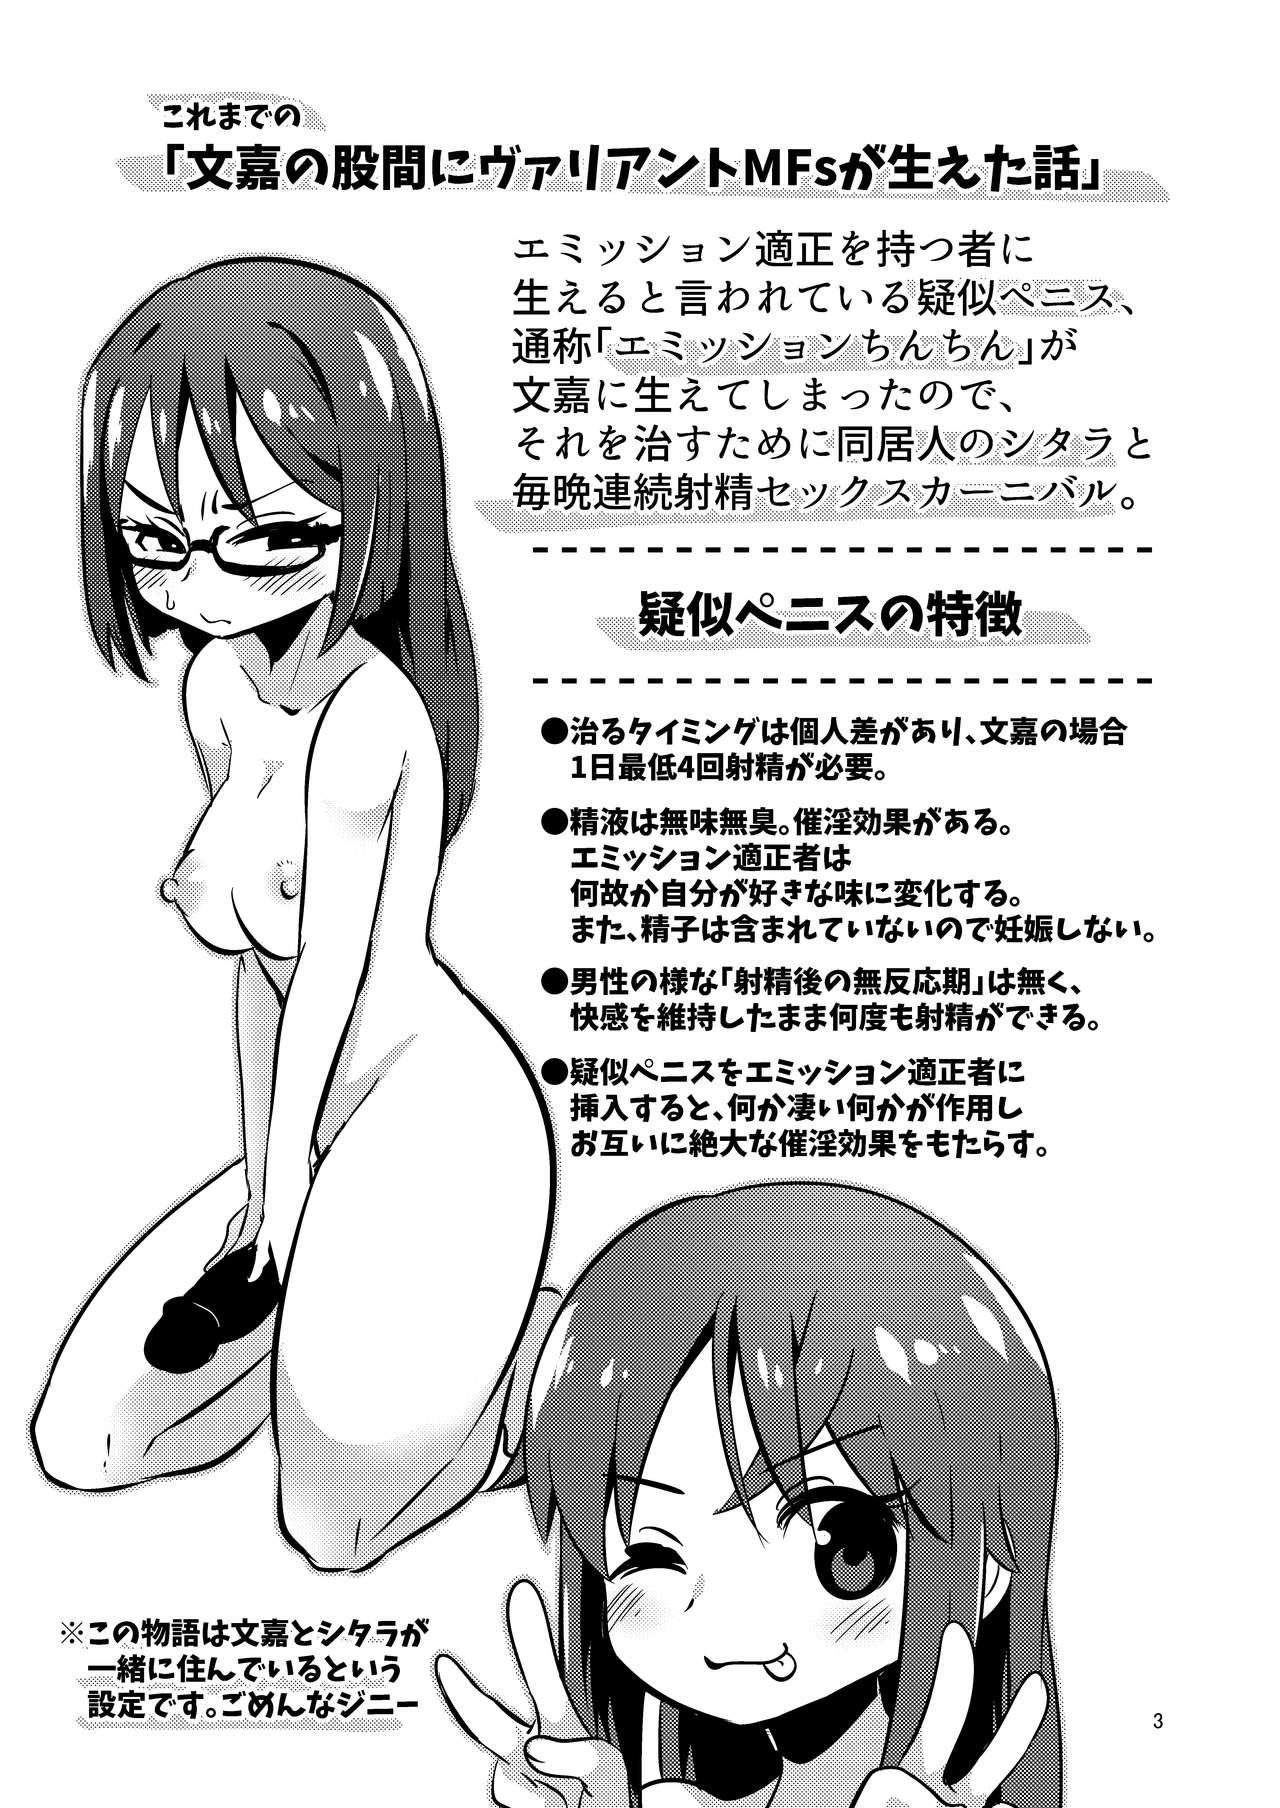 Arrecha Fumika no Kokan ni Variant MFs ga Haeta Hanashi 3 Kannin Hen - Alice gear aegis Ball Busting - Page 3